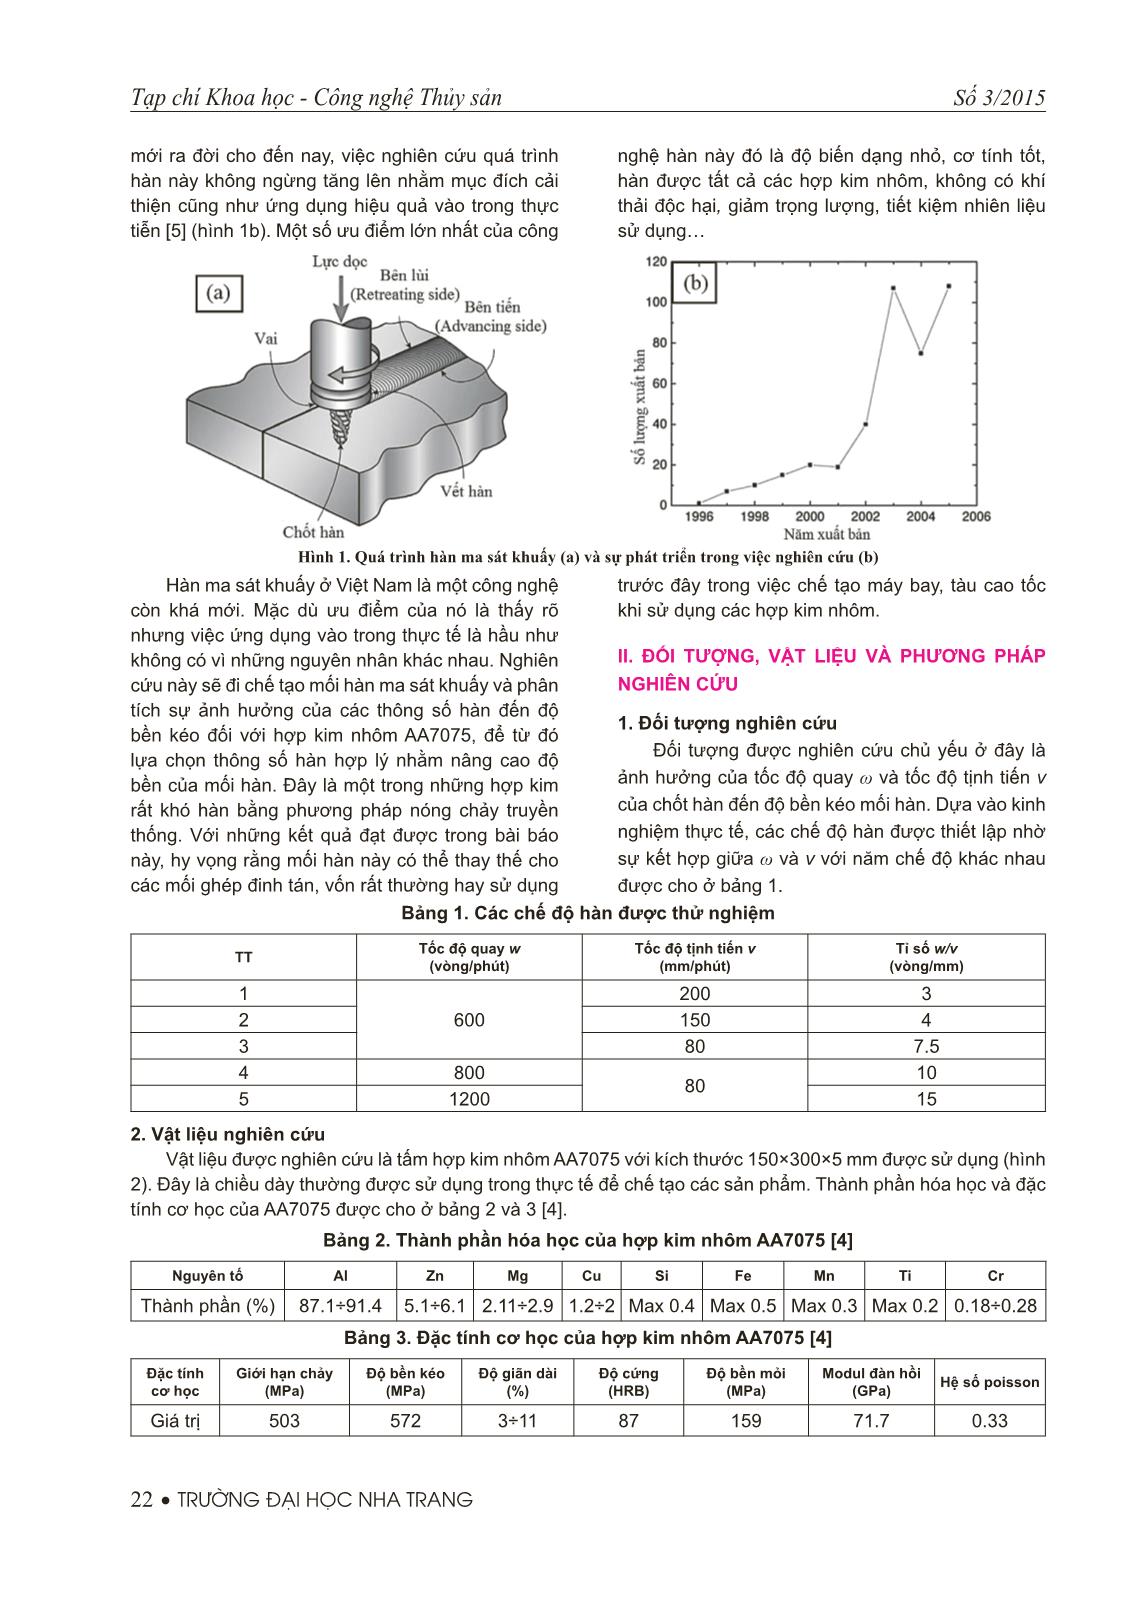 Nghiên cứu ảnh hưởng của thông số hàn đến độ bền kéo mối hàn ma sát khuấy tấm hợp kim nhôm AA7075 trang 2